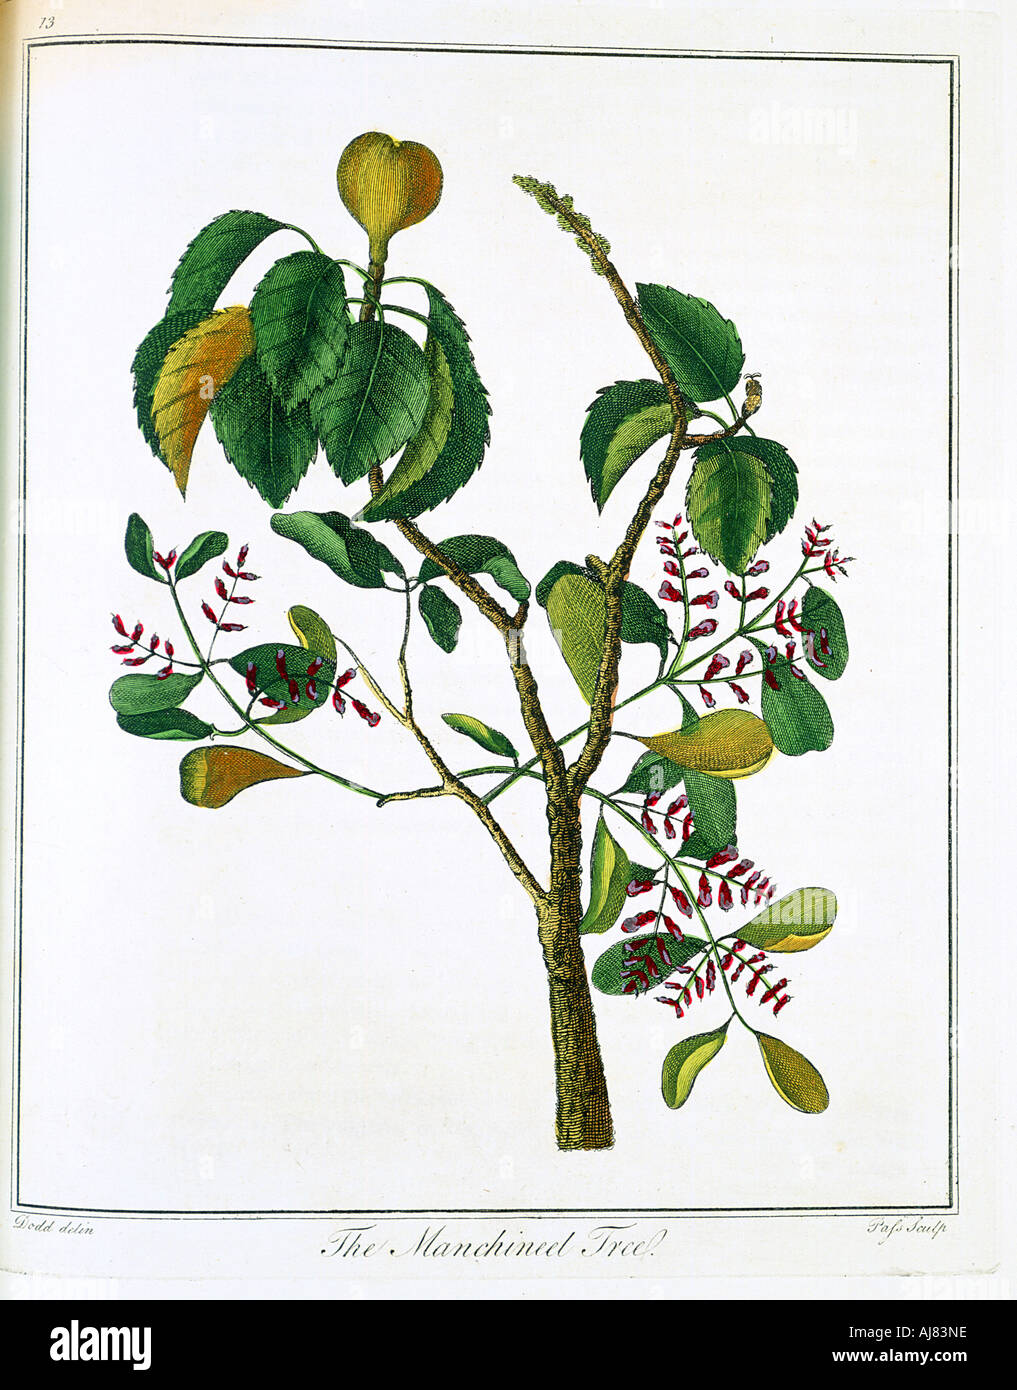 Manicheel tree (Hippomane mancinella) or Poison Guava, c1795. Artist: Unknown Stock Photo